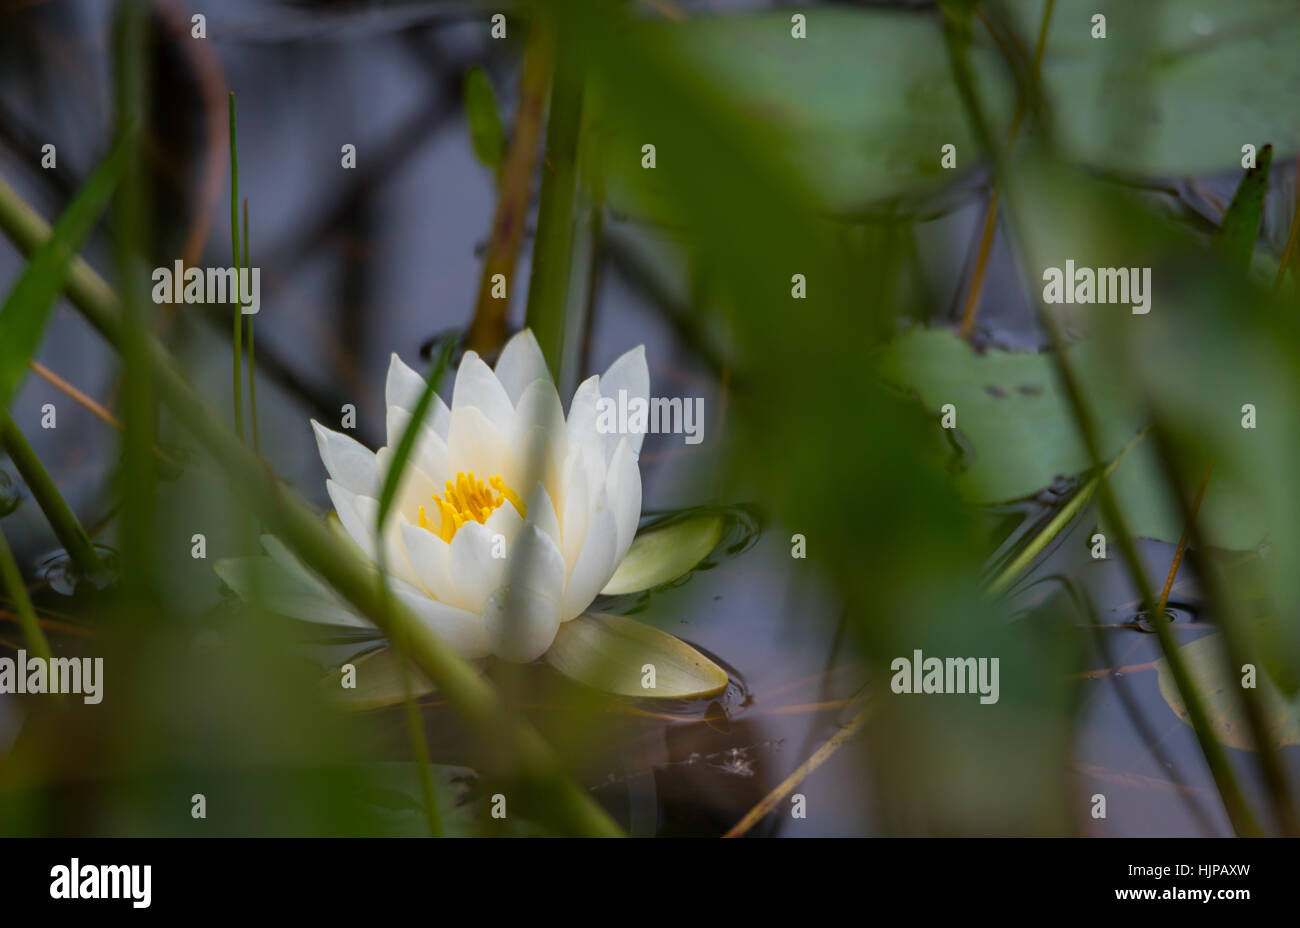 Weiße Blütenblätter eine schwimmende Seerose Nymphaea Alba.   Nymphaea Alba - wilde schwimmende Seerose mit weißen Blütenblättern und gelbe Staubgefäße. Stockfoto